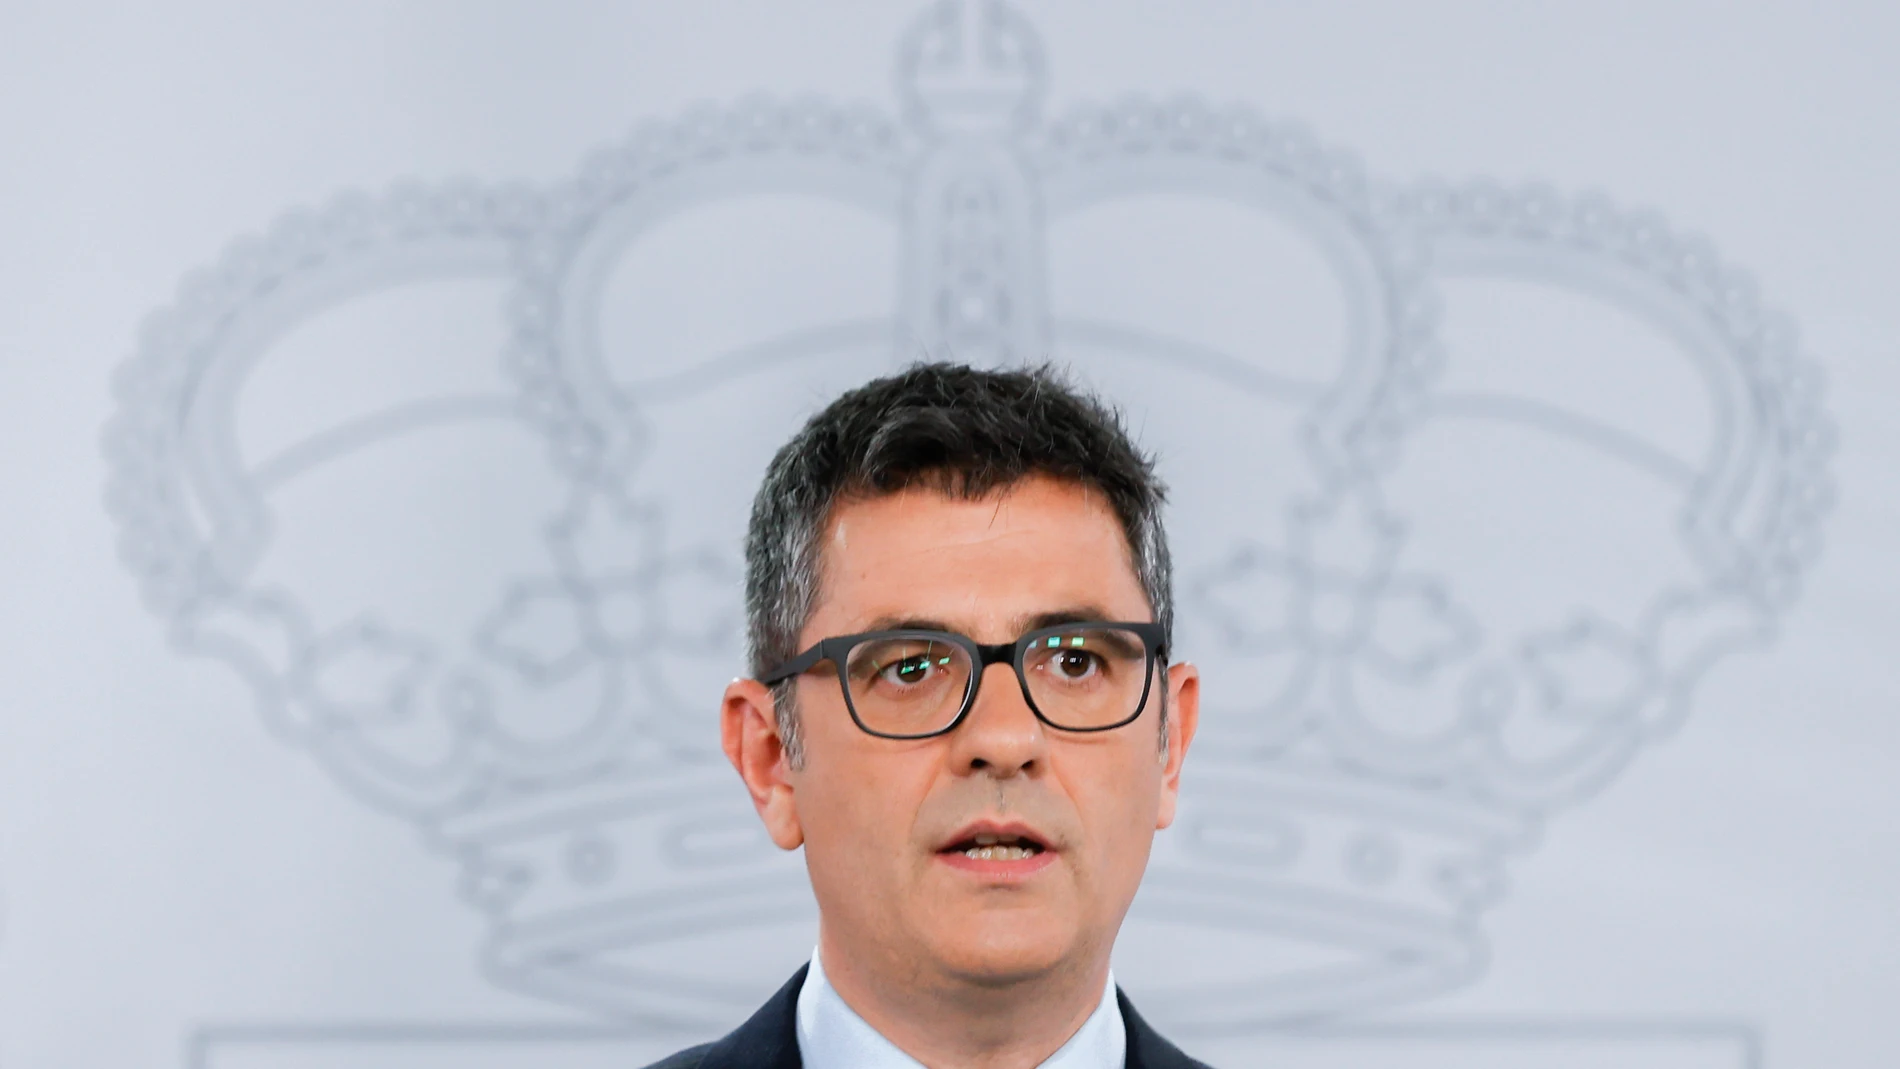 El ministro de Presidencia, Félix Bolaños durante la rueda de prensa en La Moncloa este miércoles tras la tercera reunión de la mesa de diálogo